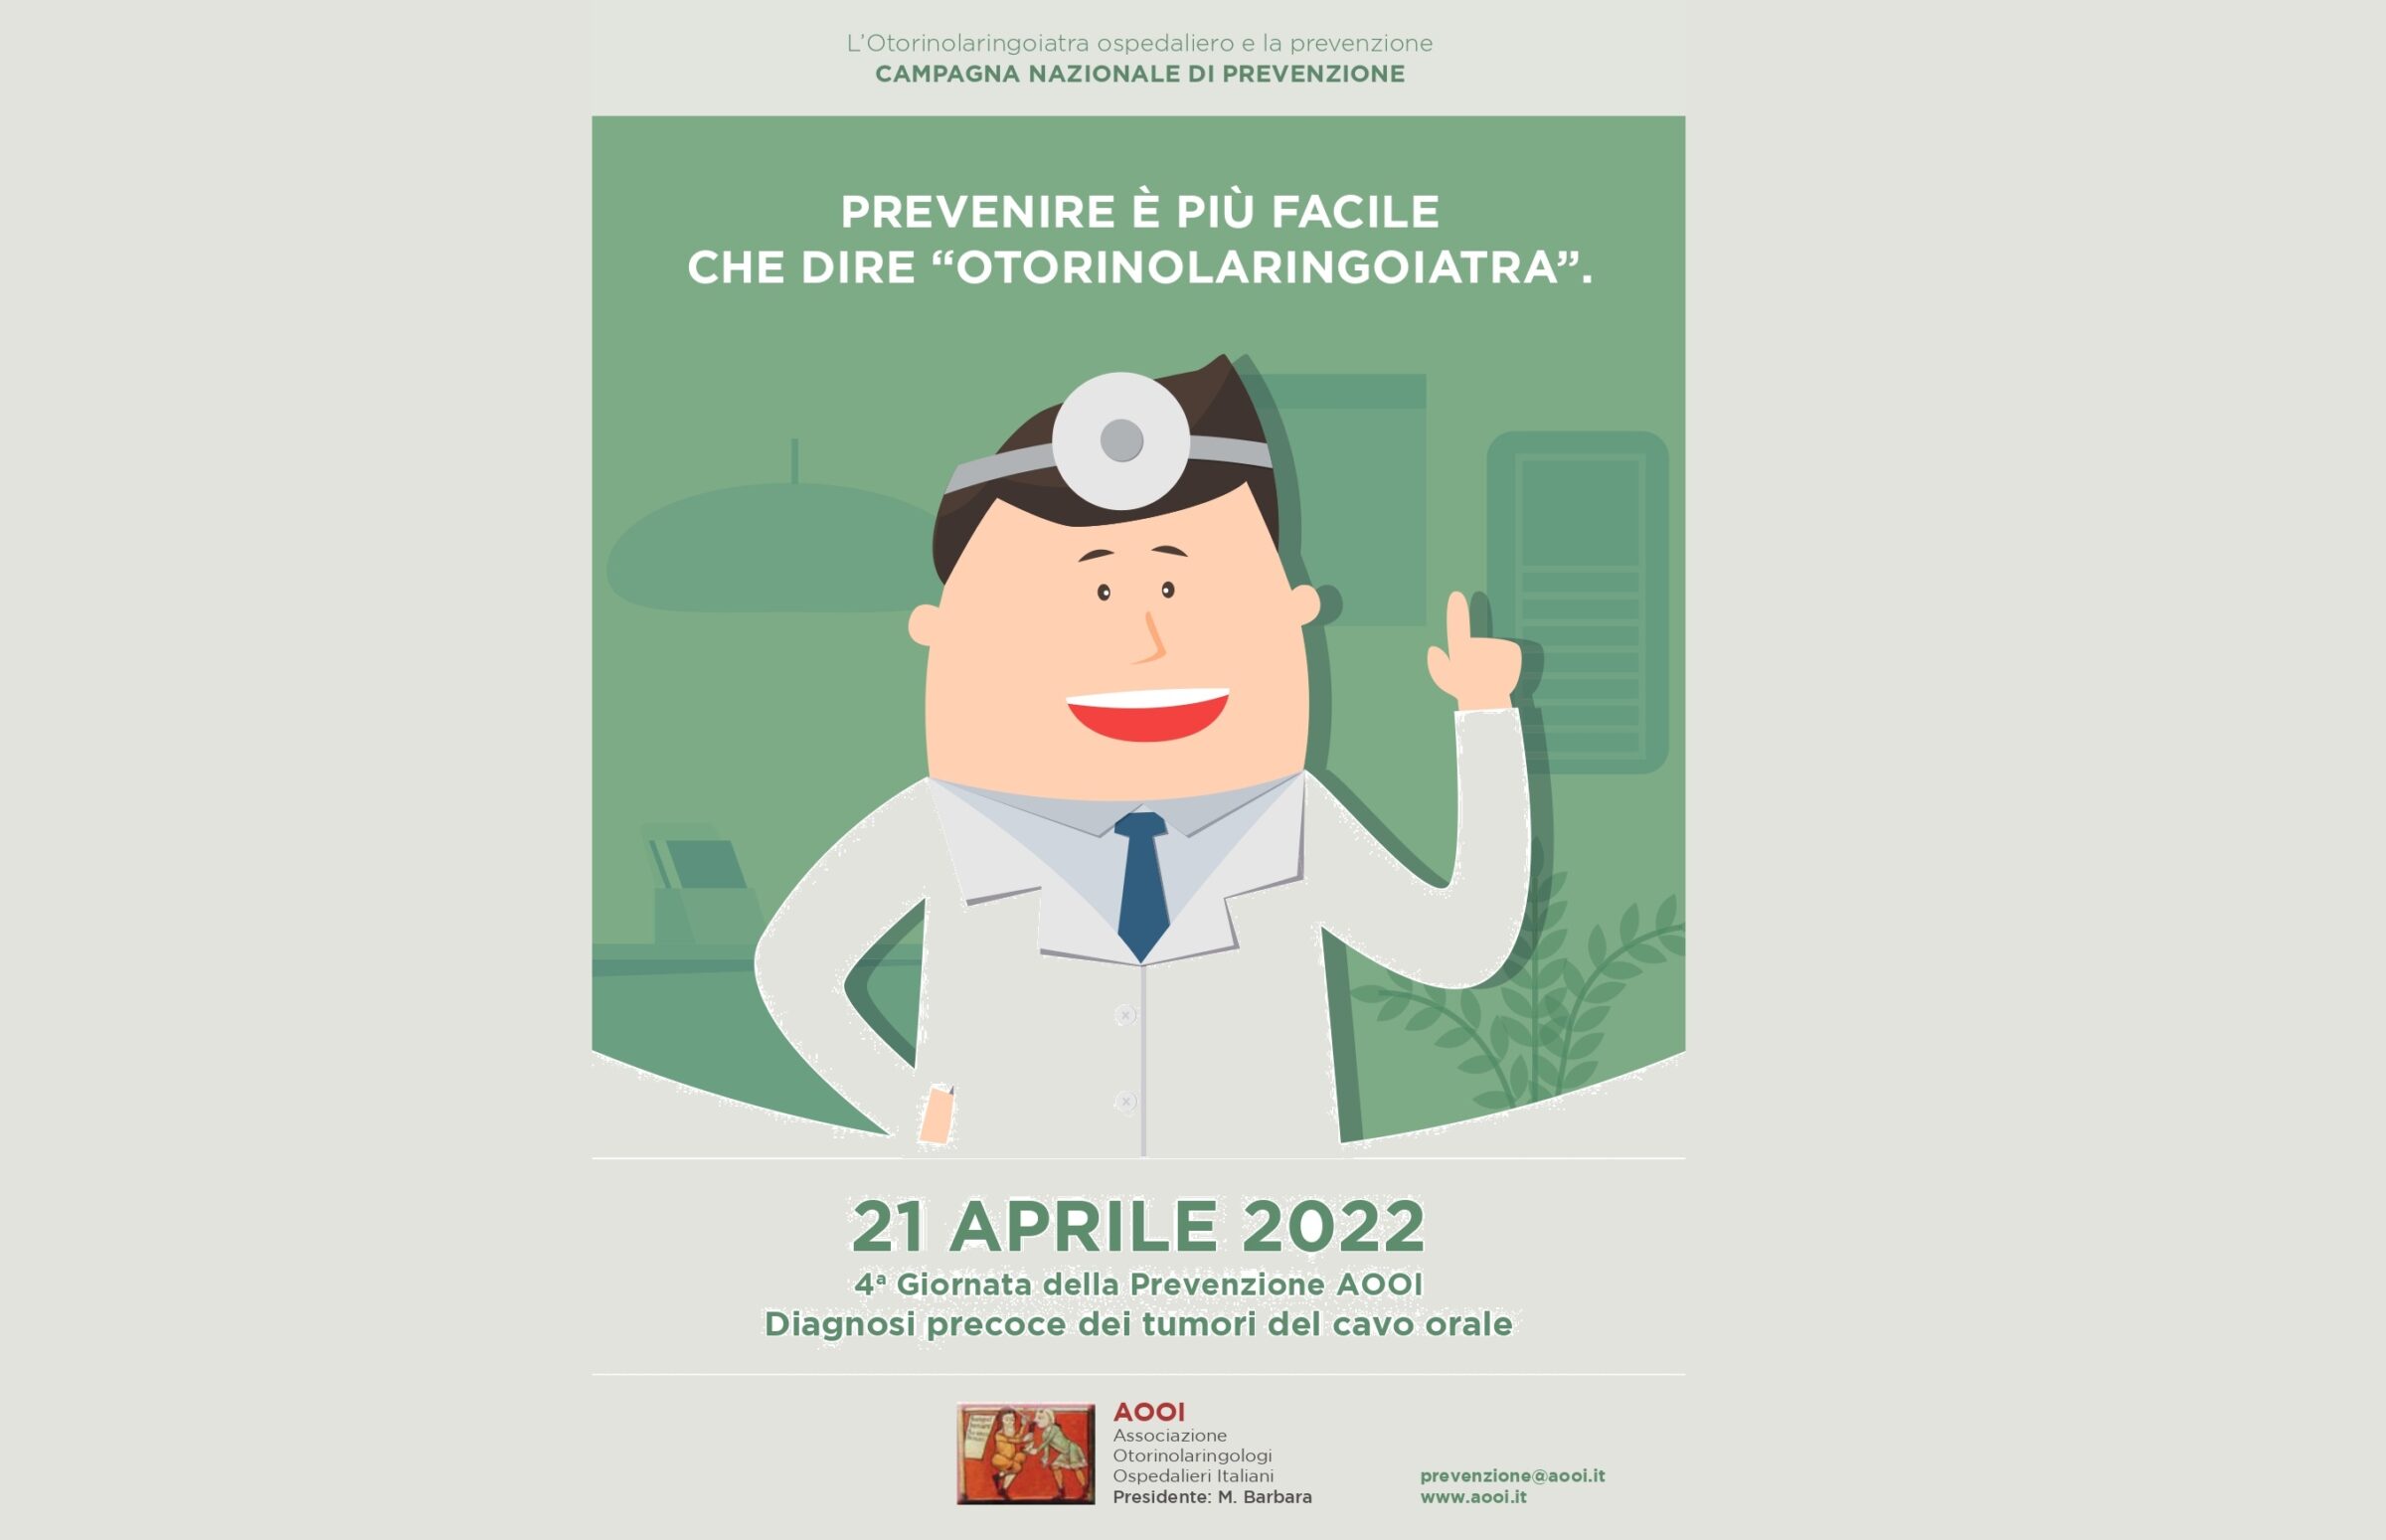 Tumori del cavo orale, giovedì screening gratuito a Catania nella Giornata nazionale di prevenzione